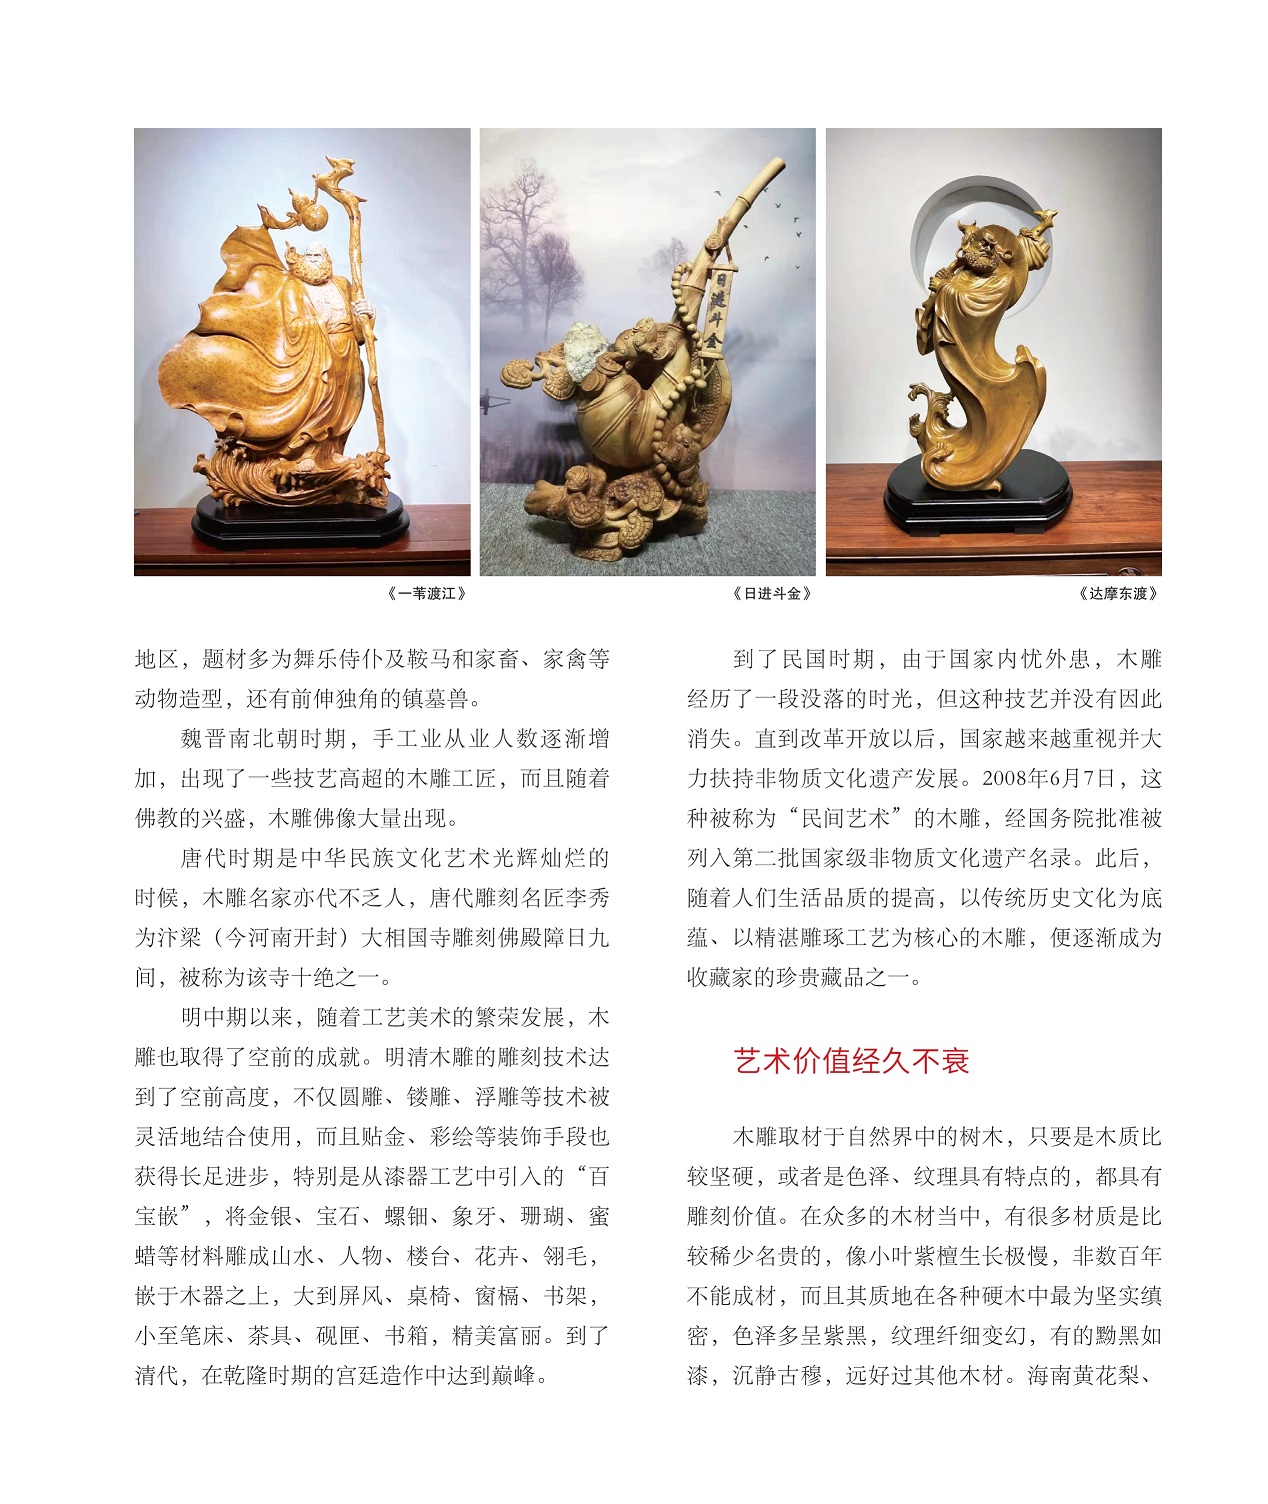 唐代时期是中华民族文化艺术光辉灿烂的时候,艺术价值经久不衰